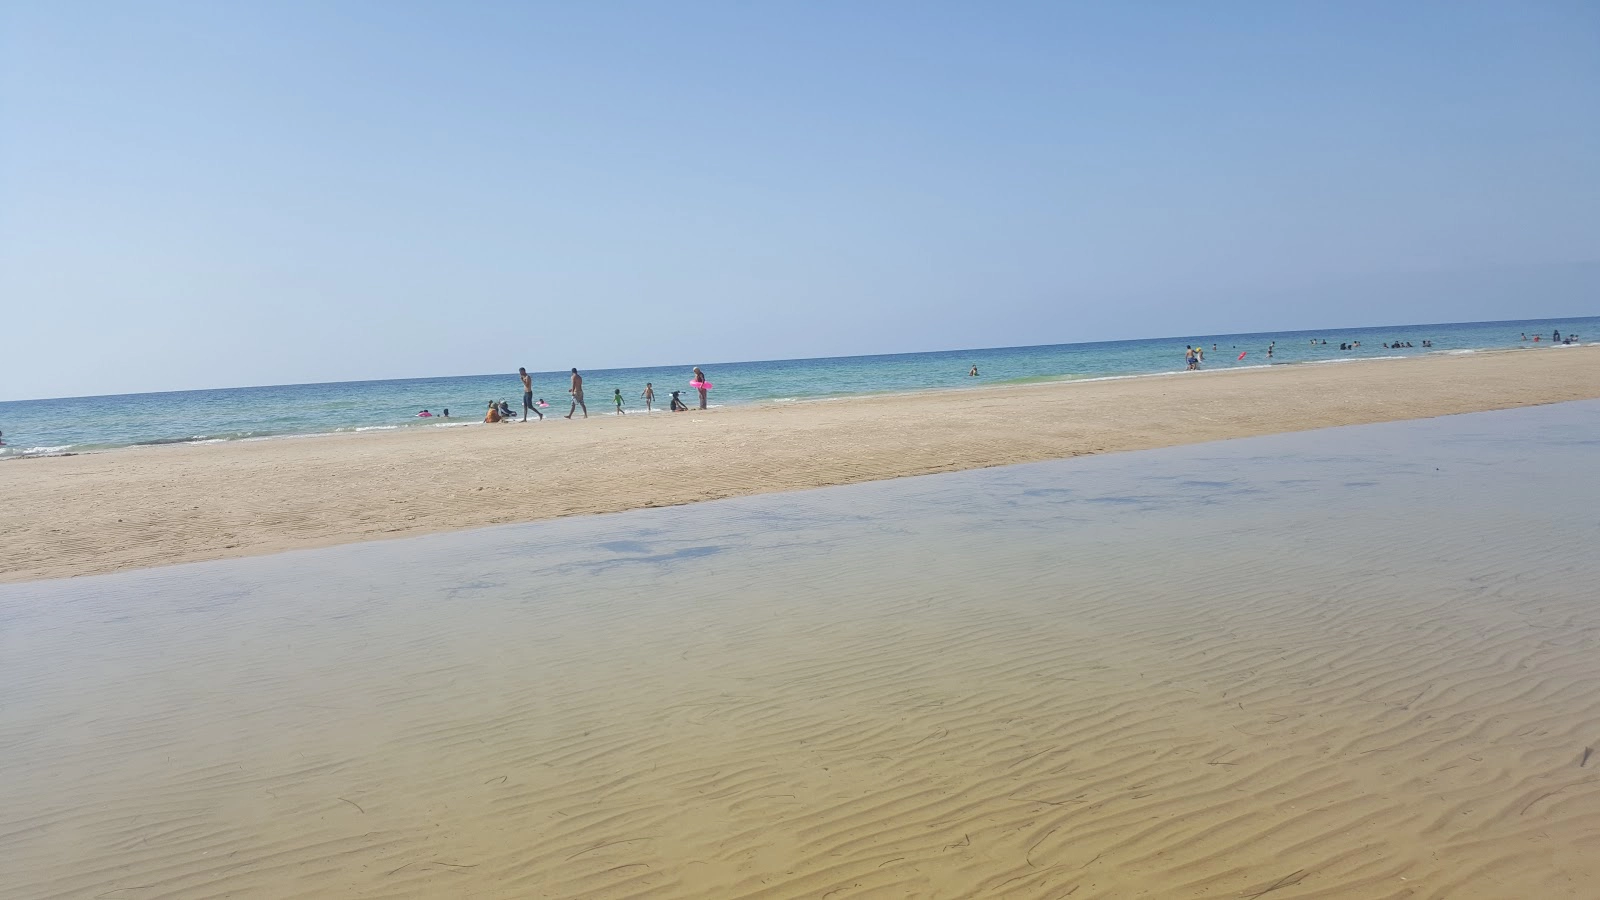  Chaffar  strand - Tunisia